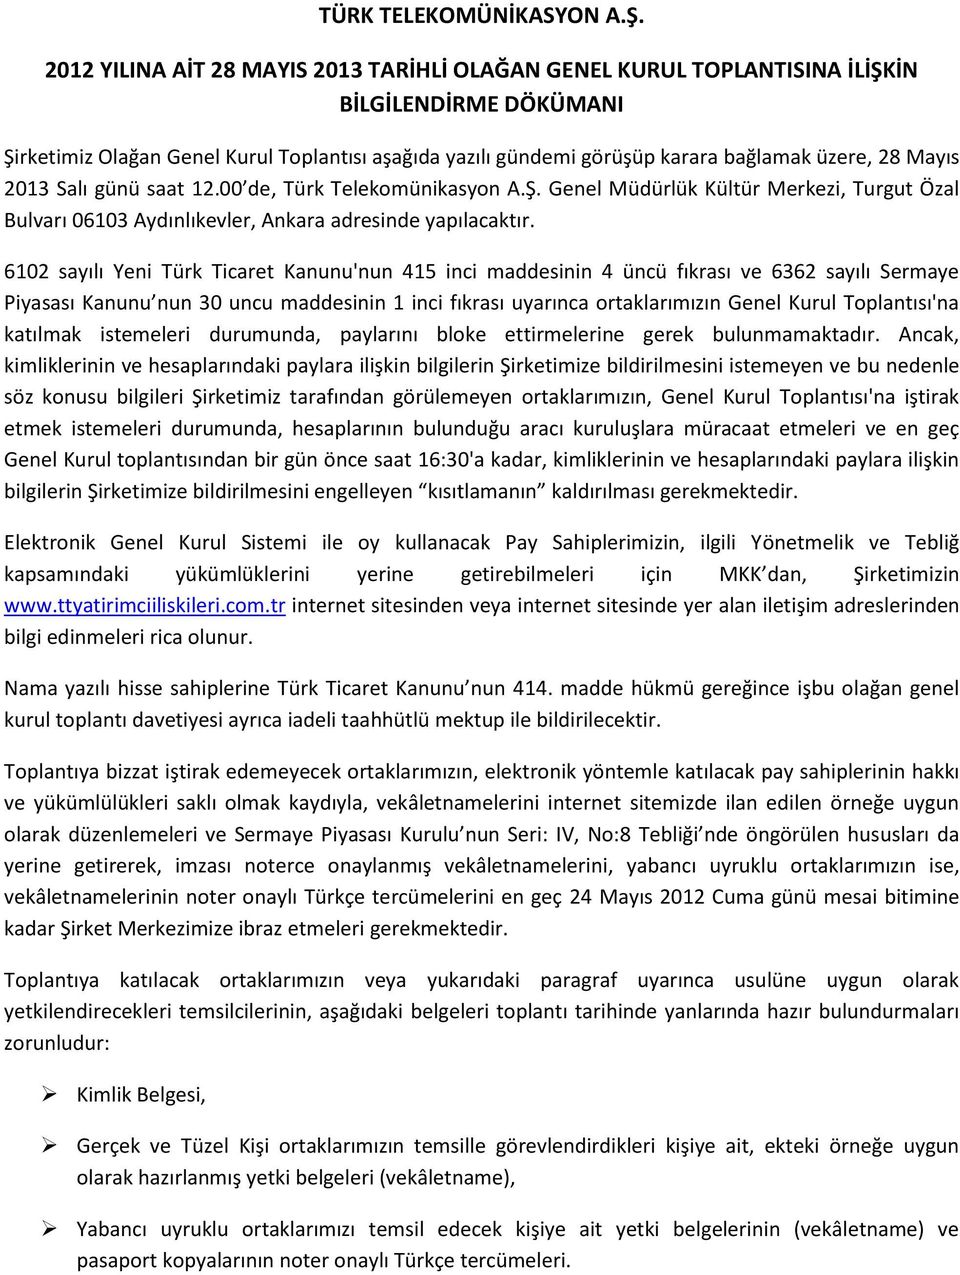 Mayıs 2013 Salı günü saat 12.00 de, Türk Telekomünikasyon A.Ş. Genel Müdürlük Kültür Merkezi, Turgut Özal Bulvarı 06103 Aydınlıkevler, Ankara adresinde yapılacaktır.